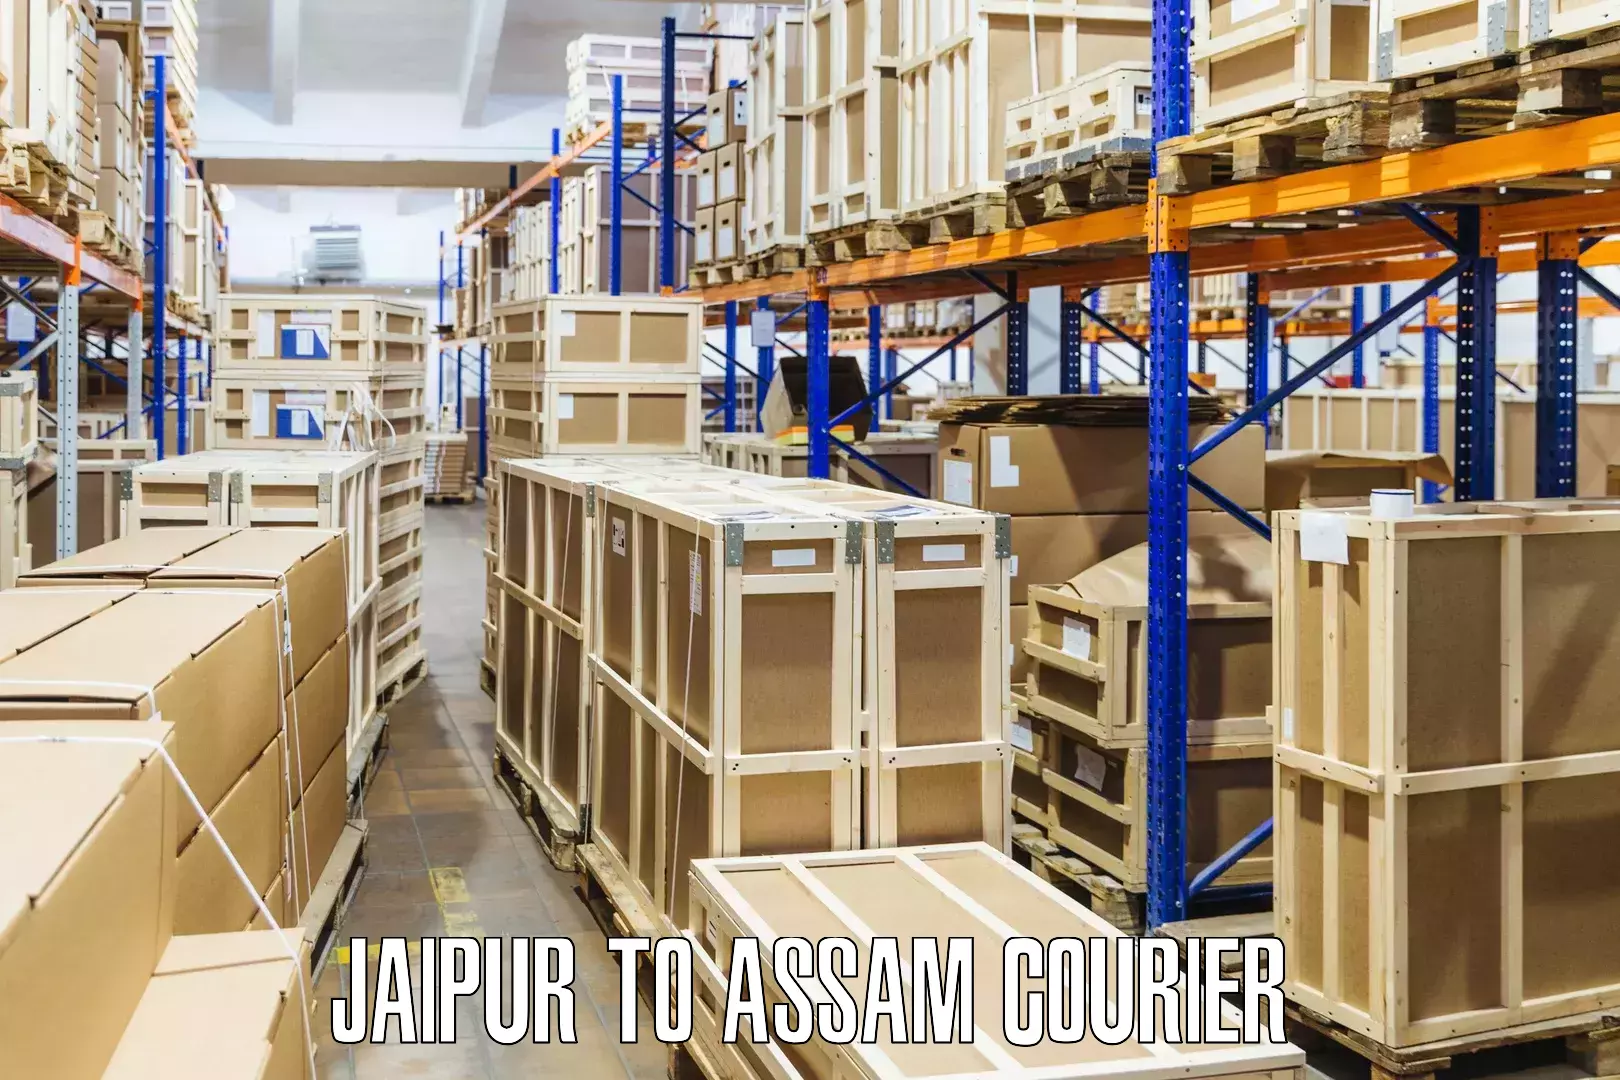 High-capacity parcel service Jaipur to Baksha Bodoland